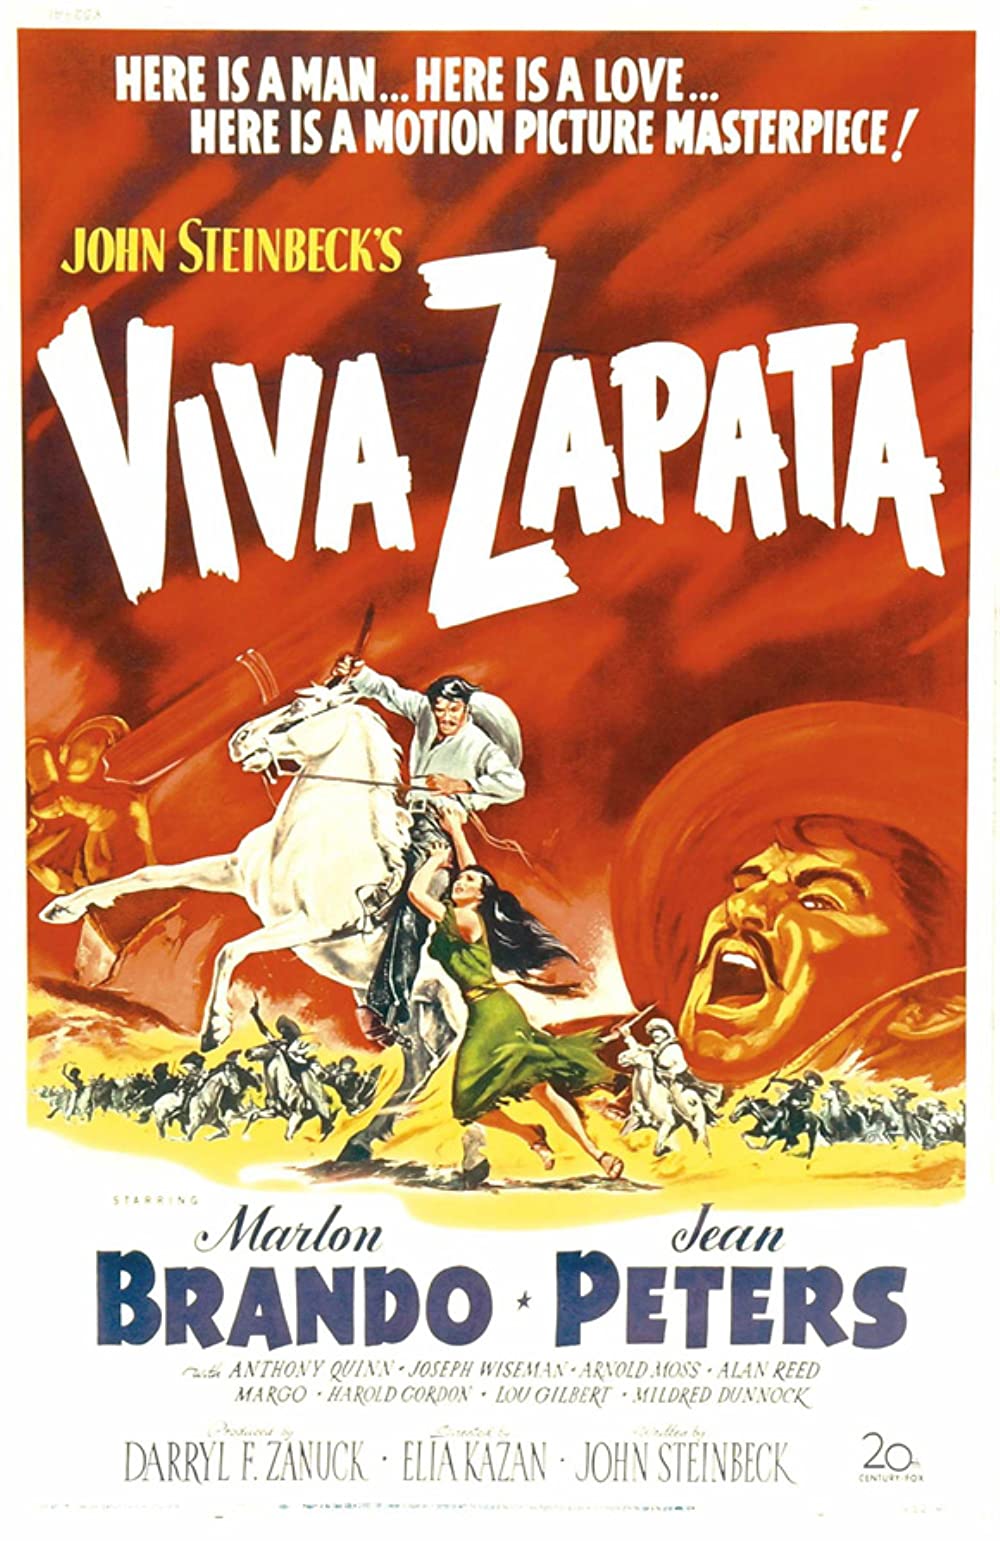 Filmbeschreibung zu Viva Zapata!